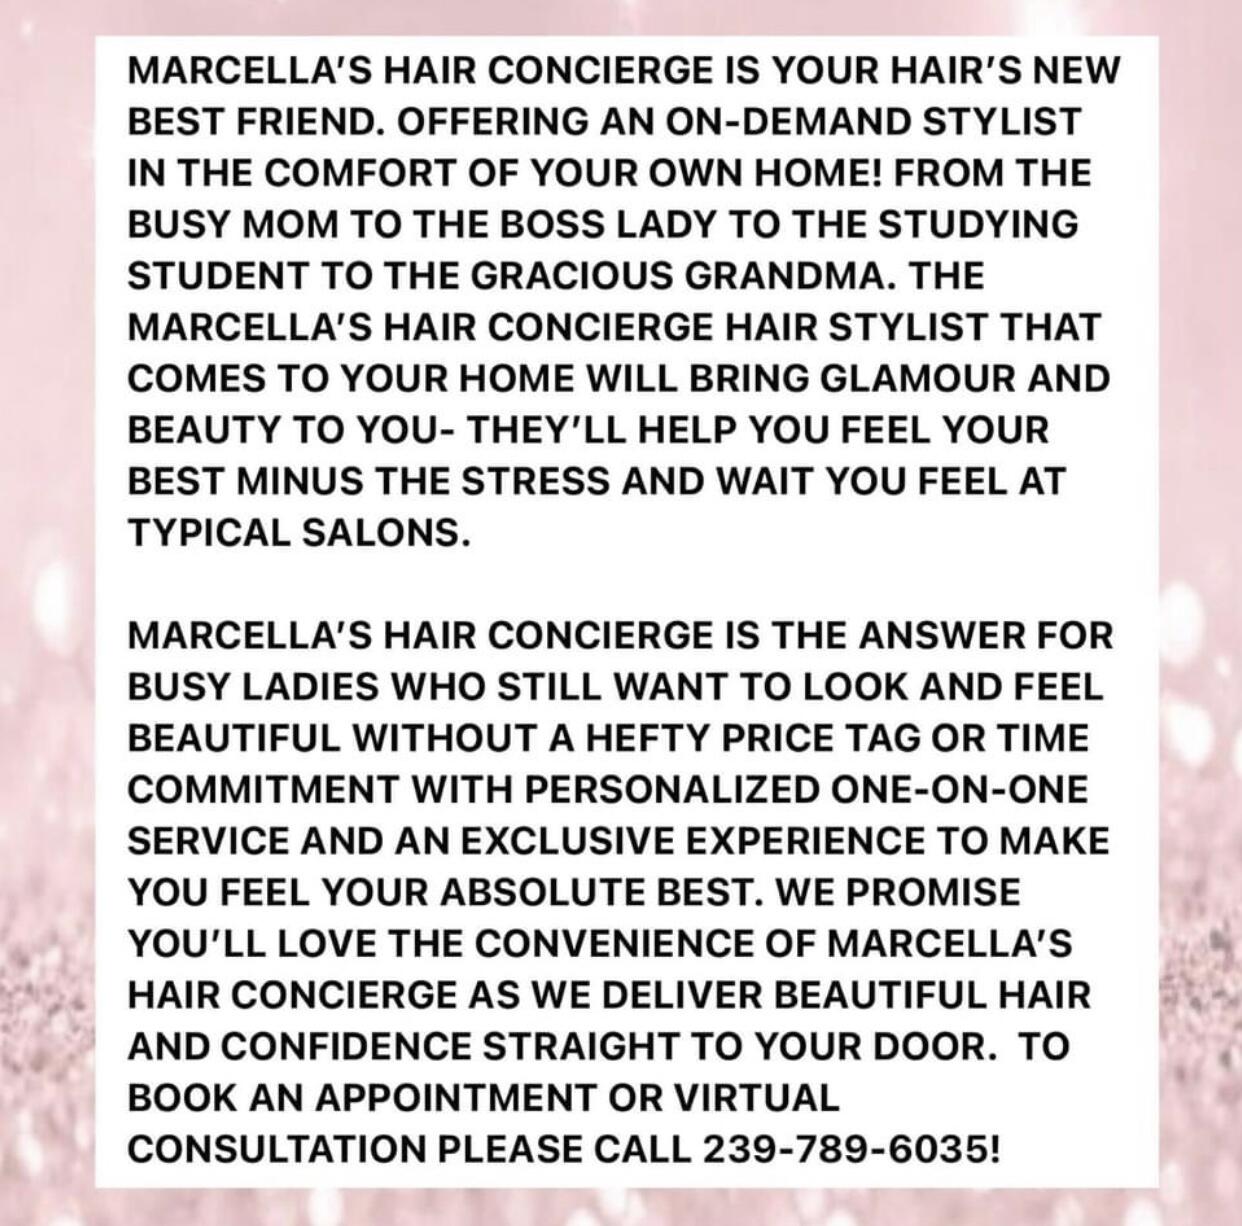 Marcella's Hair Concierge